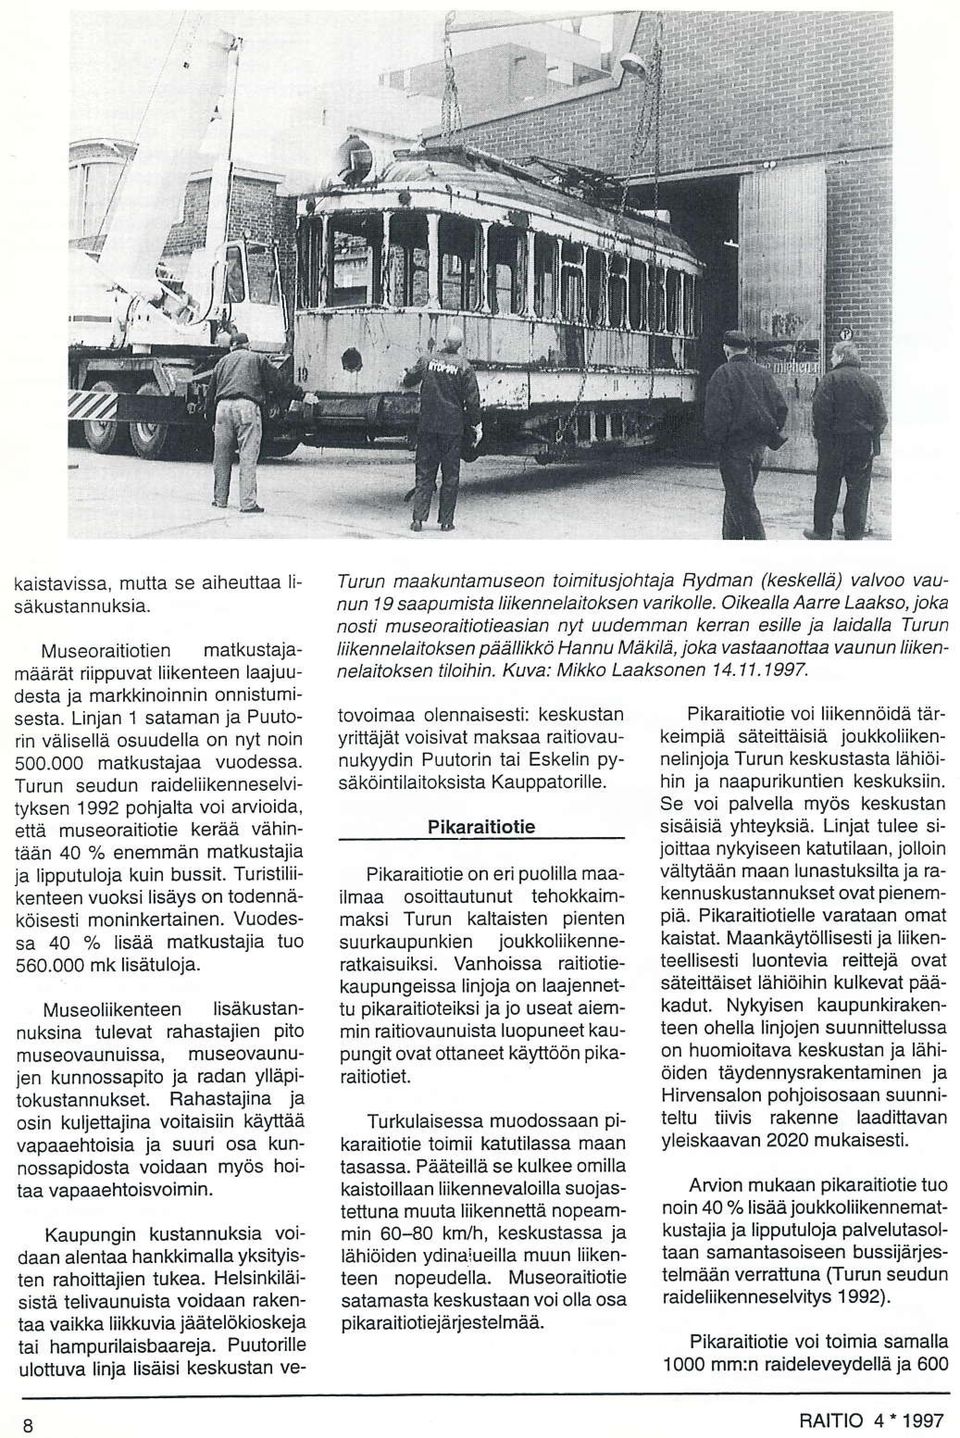 Turun seudun raideliikenneselvityksen 1992 pohialta voi arvioida, etiä museoraitiotie keråä vähintään 40 % enemmån matkustajja la lipputuloja kuin bussit.